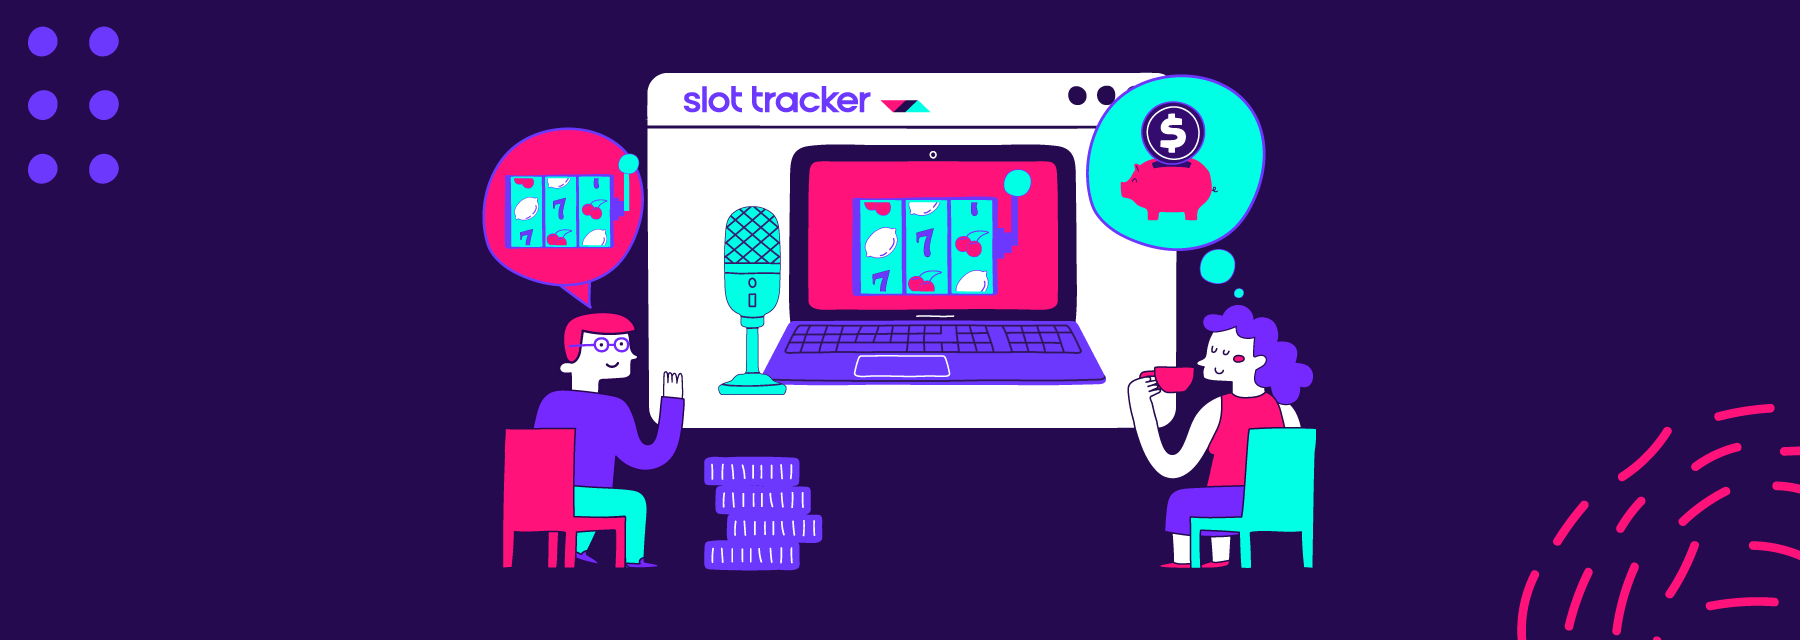 Slot Tracker ya tiene colaborador en su campaña de streamers ¡Ahora en mayo!